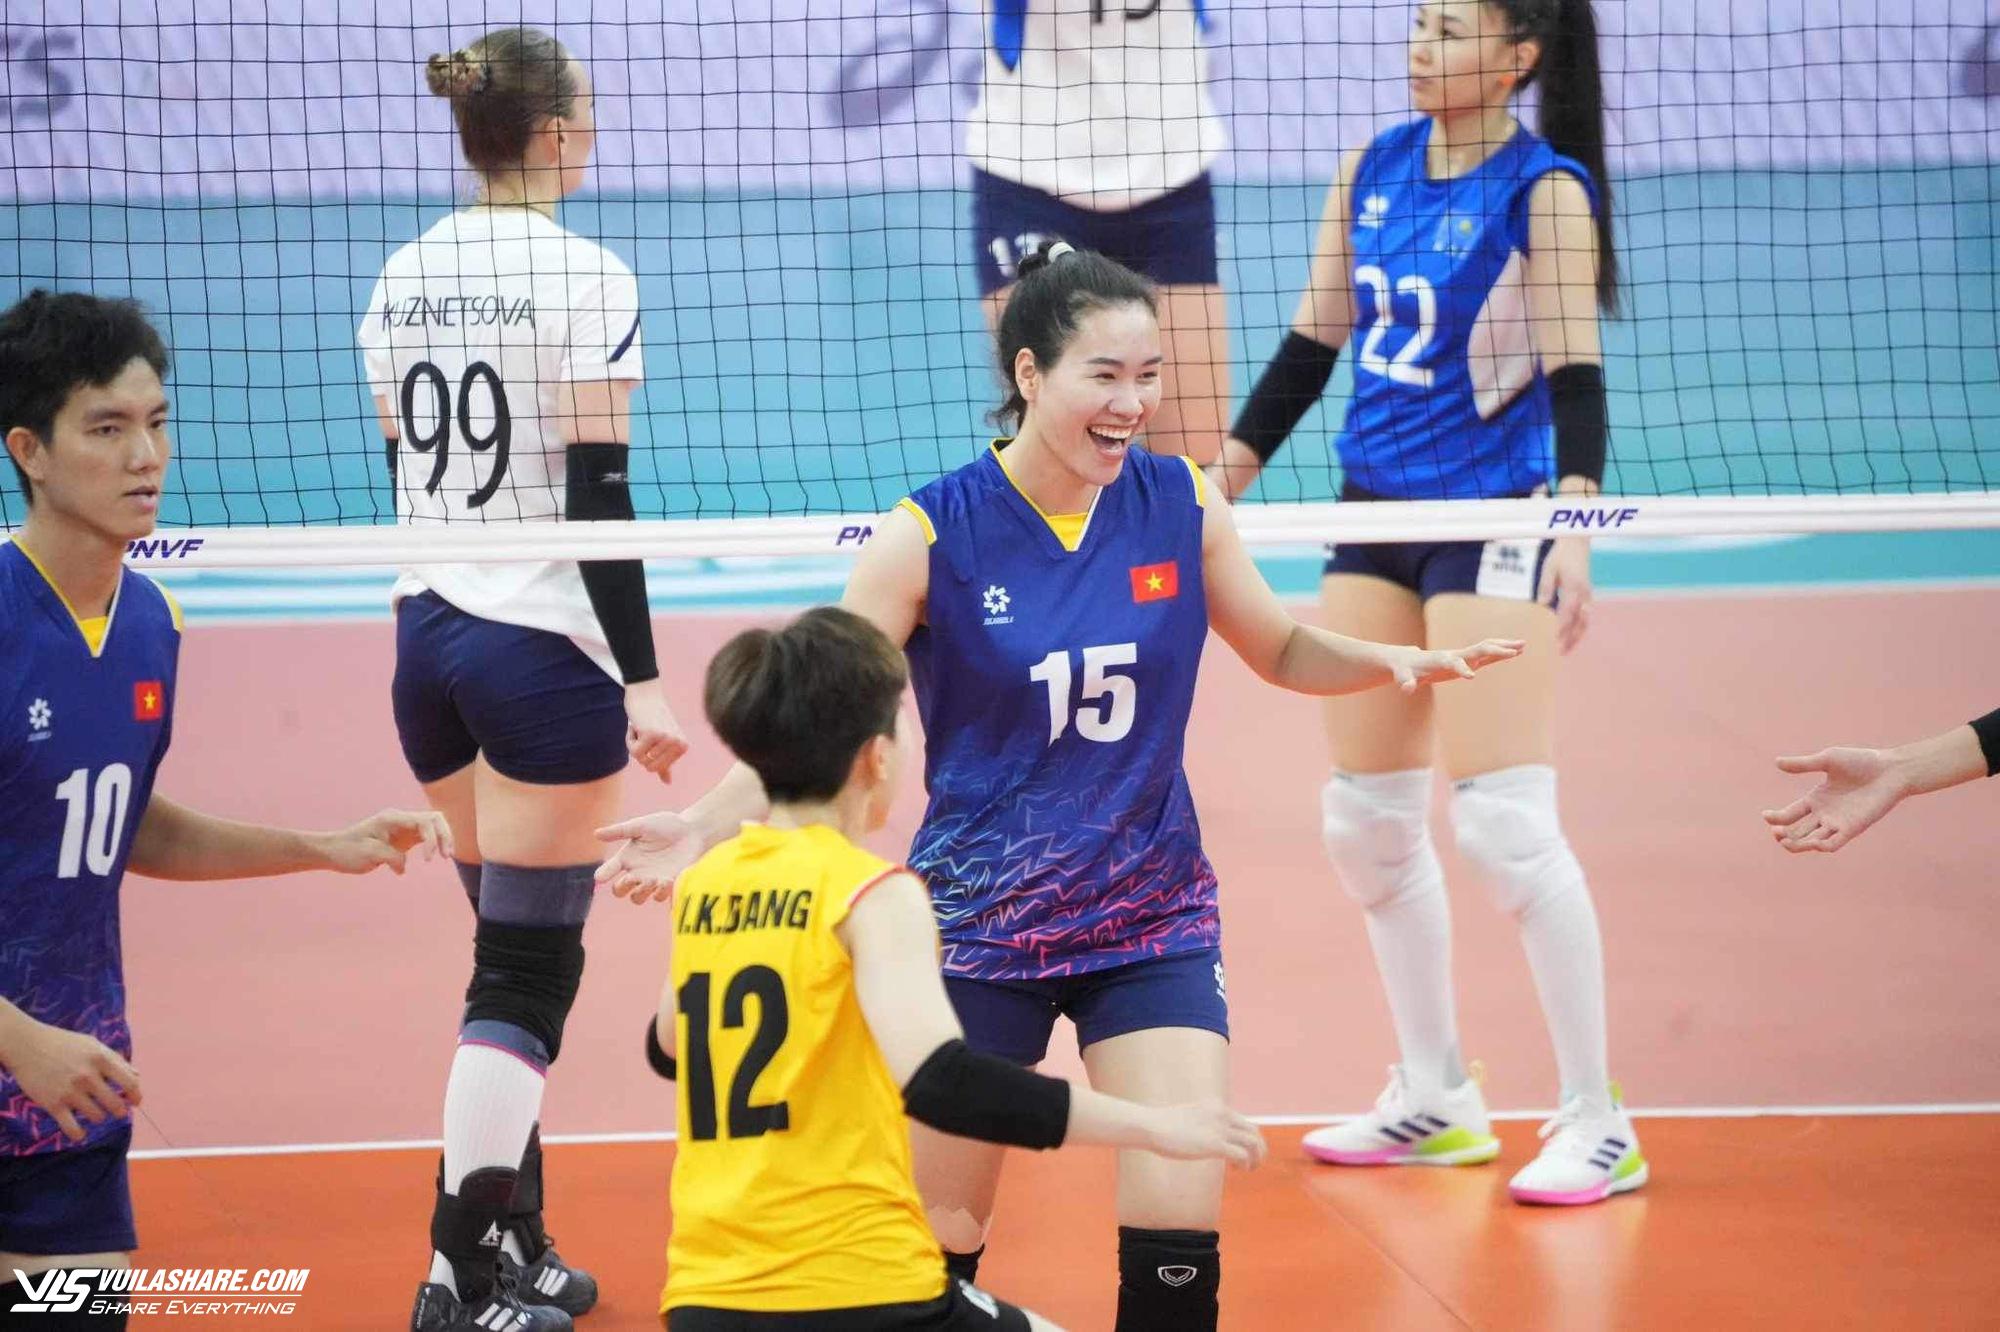 Nóng: Bích Tuyền chói sáng đưa đội tuyển Việt Nam vào chung kết bóng chuyền nữ châu Á- Ảnh 4.